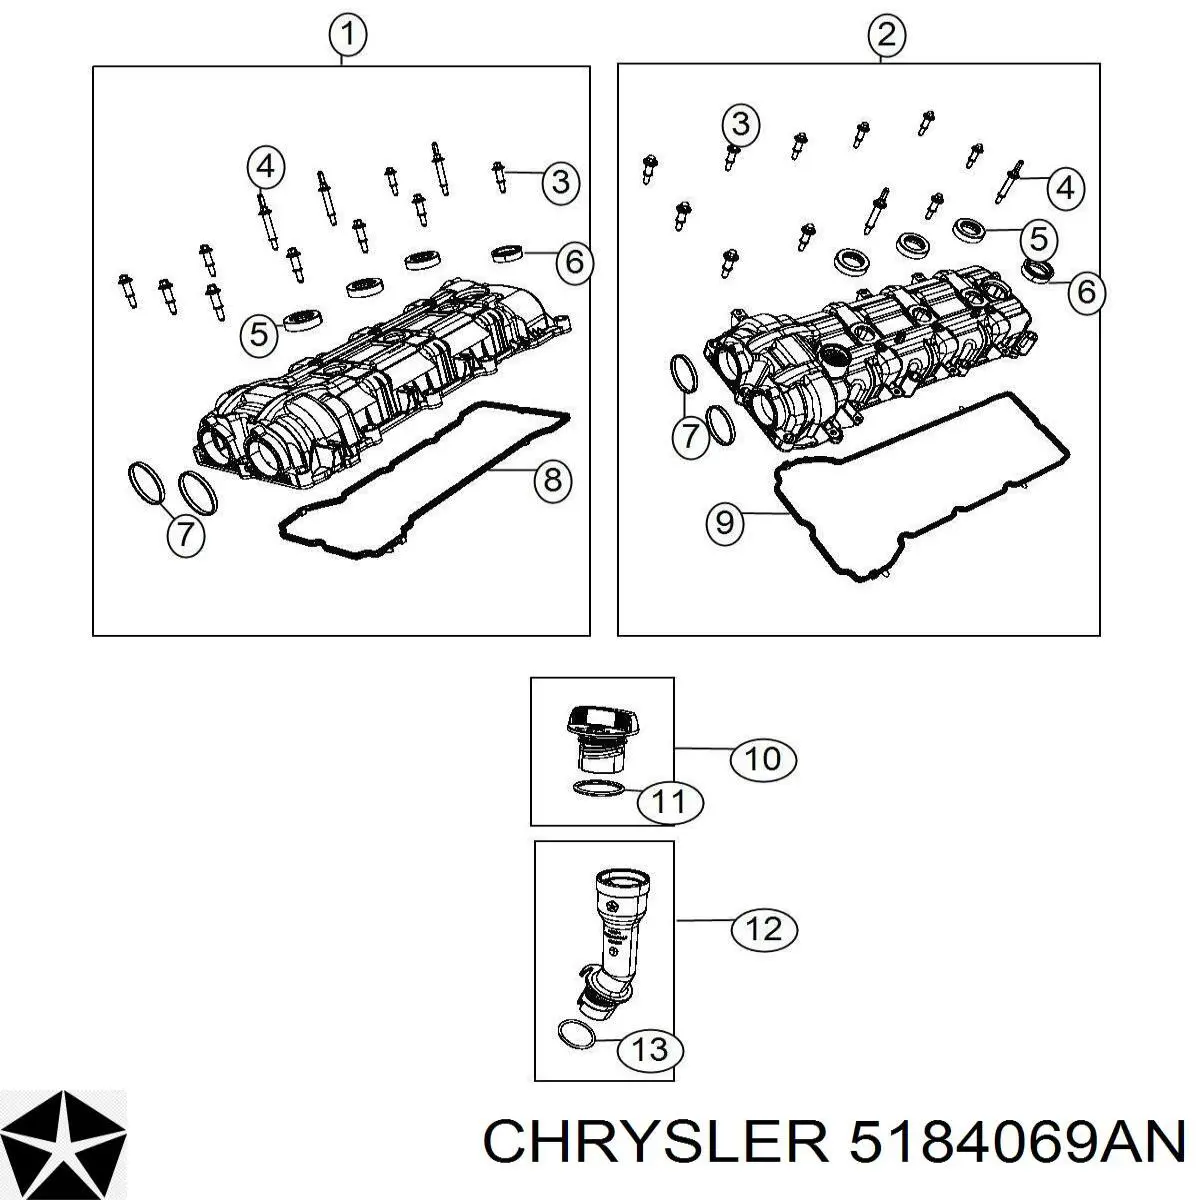 5184069AN Chrysler крышка клапанная левая